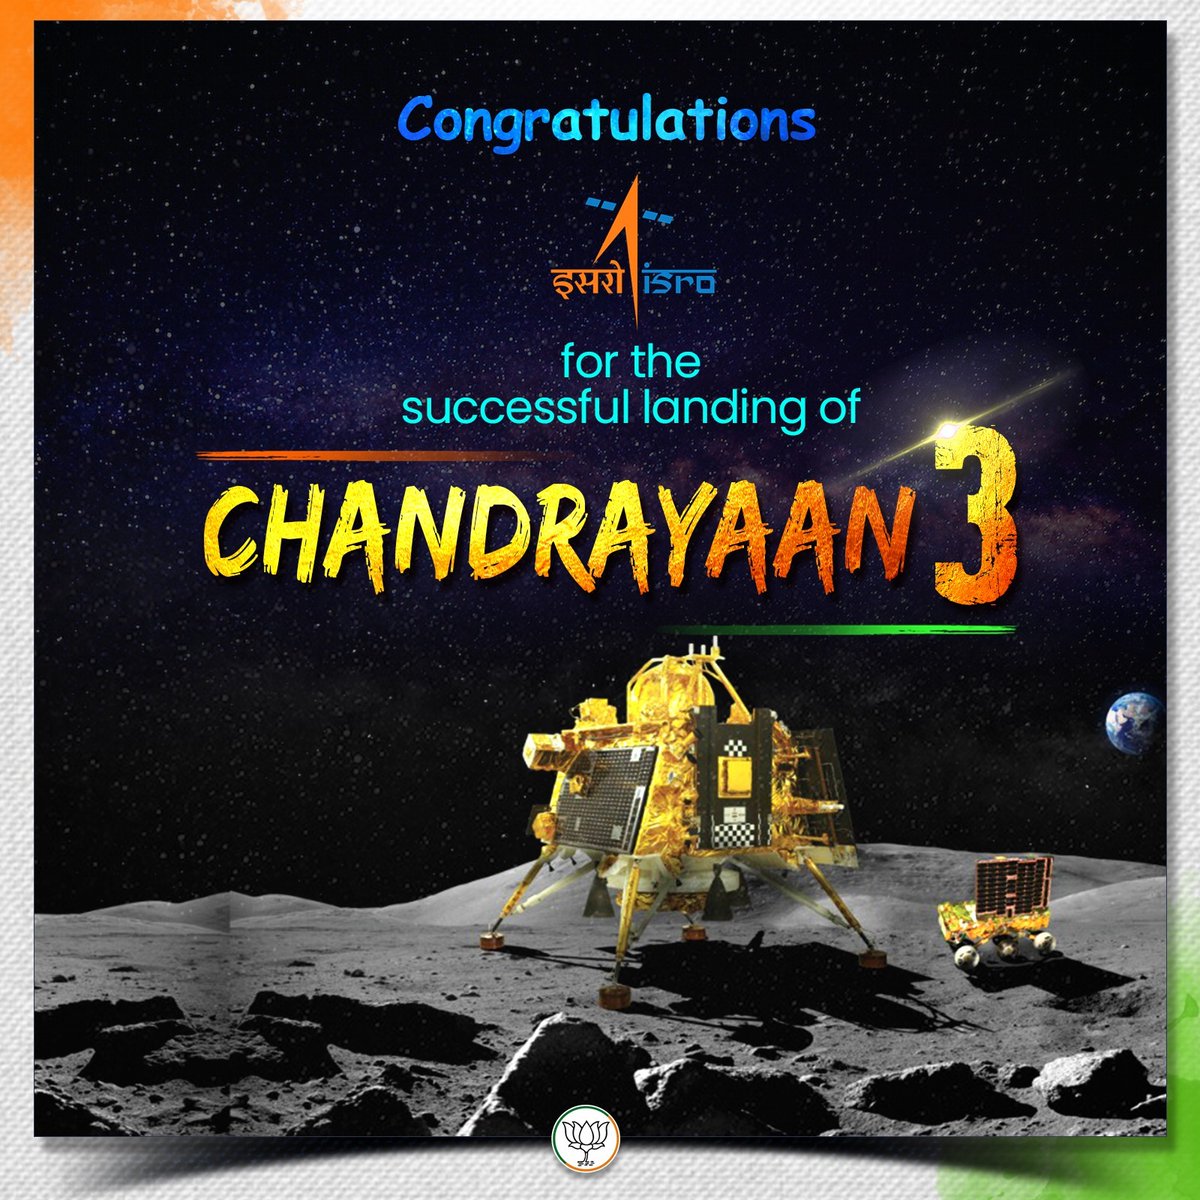 भारत के मून मिशन यानी चंद्रयान-3 के लैंडर की चंद्रमा पर सफल लैंडिंग. चंद्रमा के दक्षिणी ध्रुव पर पहुंचने वाला भारत पहला देश बन गया है. जबकि भारत दुनिया का चौथा देश है जो चंद्रमा पर पहुंचा है इससे पहले अमेरिका, रूस और चीन भी चांद पर पहुंच चुके हैं. #ChandParTiranga #JaiHo